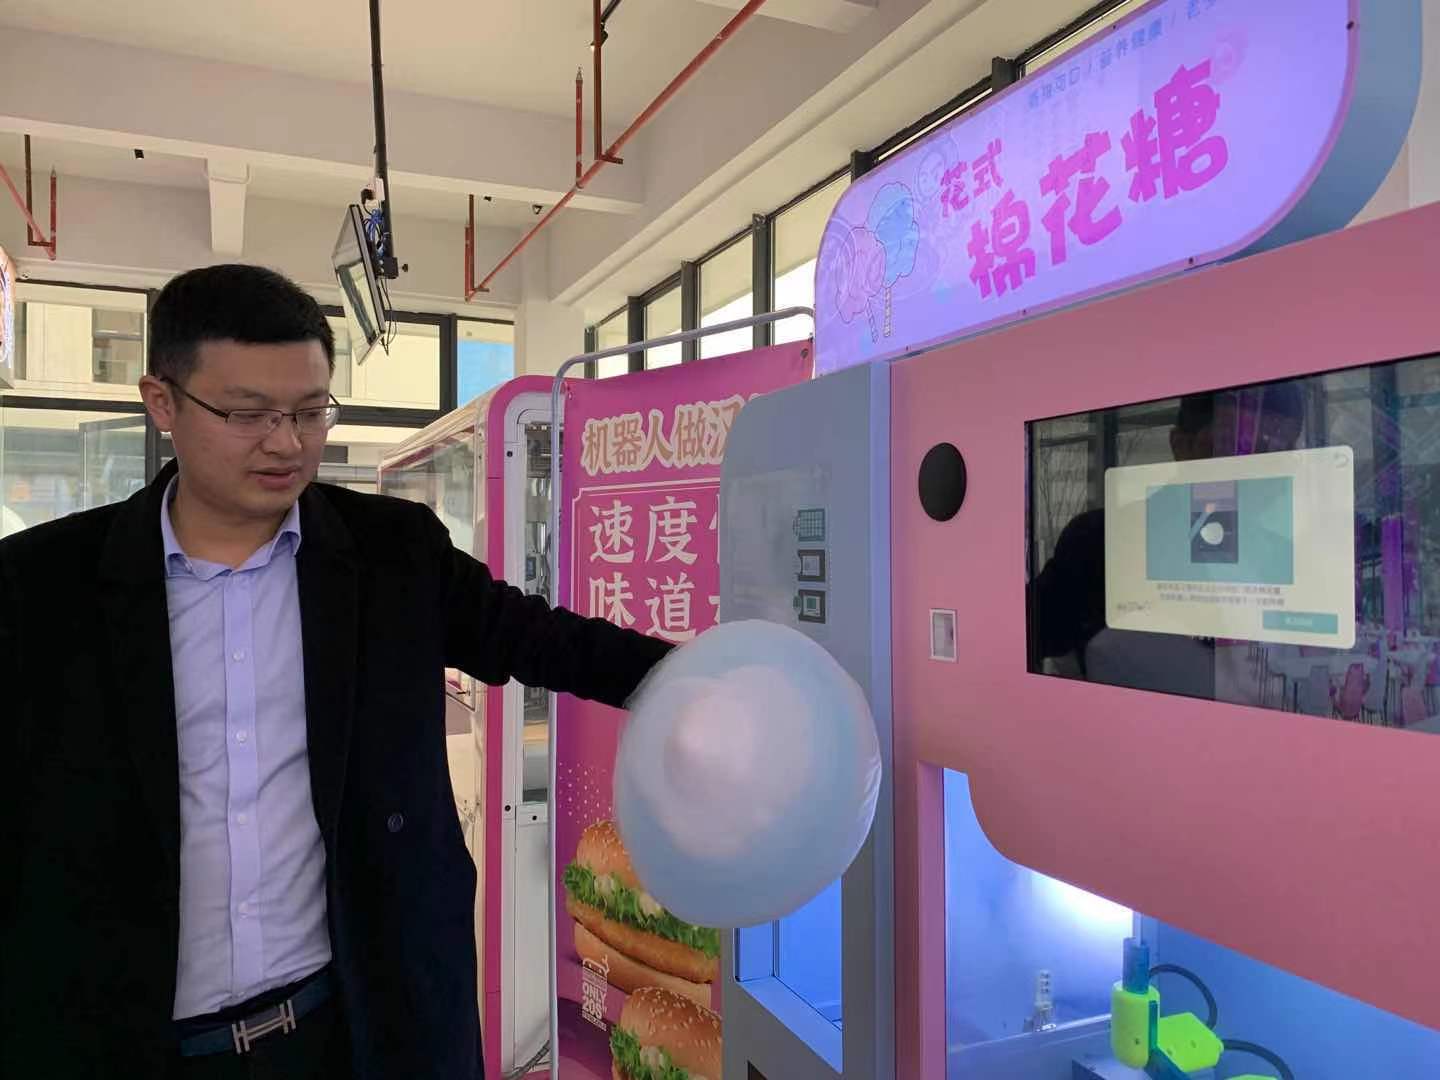 湘江智谷·人工智能科技城，负责人李天鹏向记者展示机器人如何制作棉花糖。